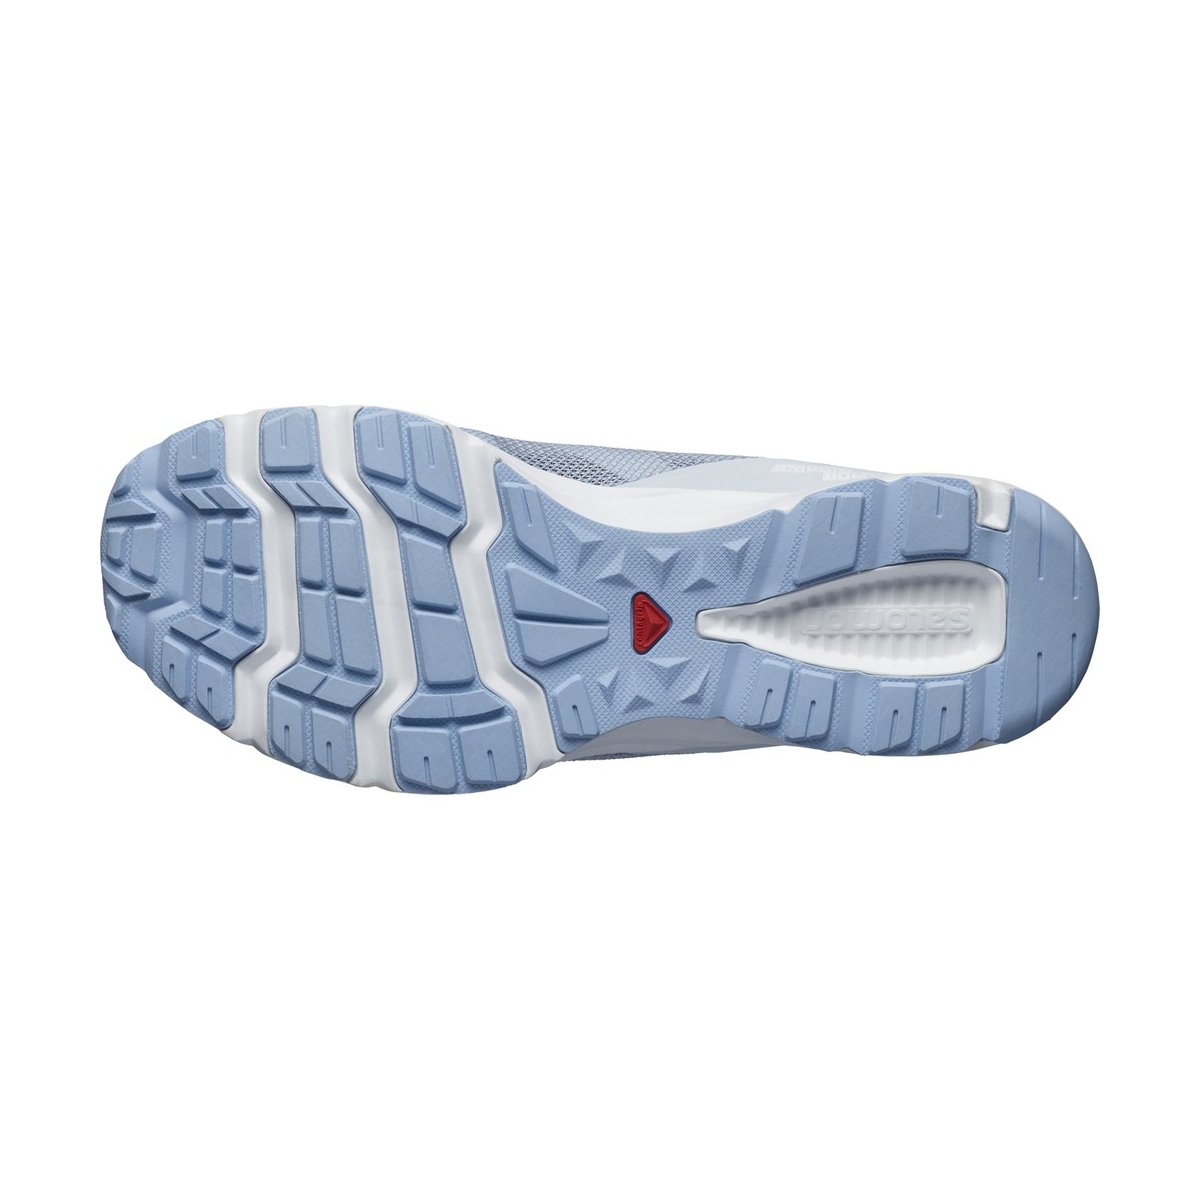 Salomon Amphib Bold 2 Kadın Mavi Outdoor Ayakkabı (L47153700)